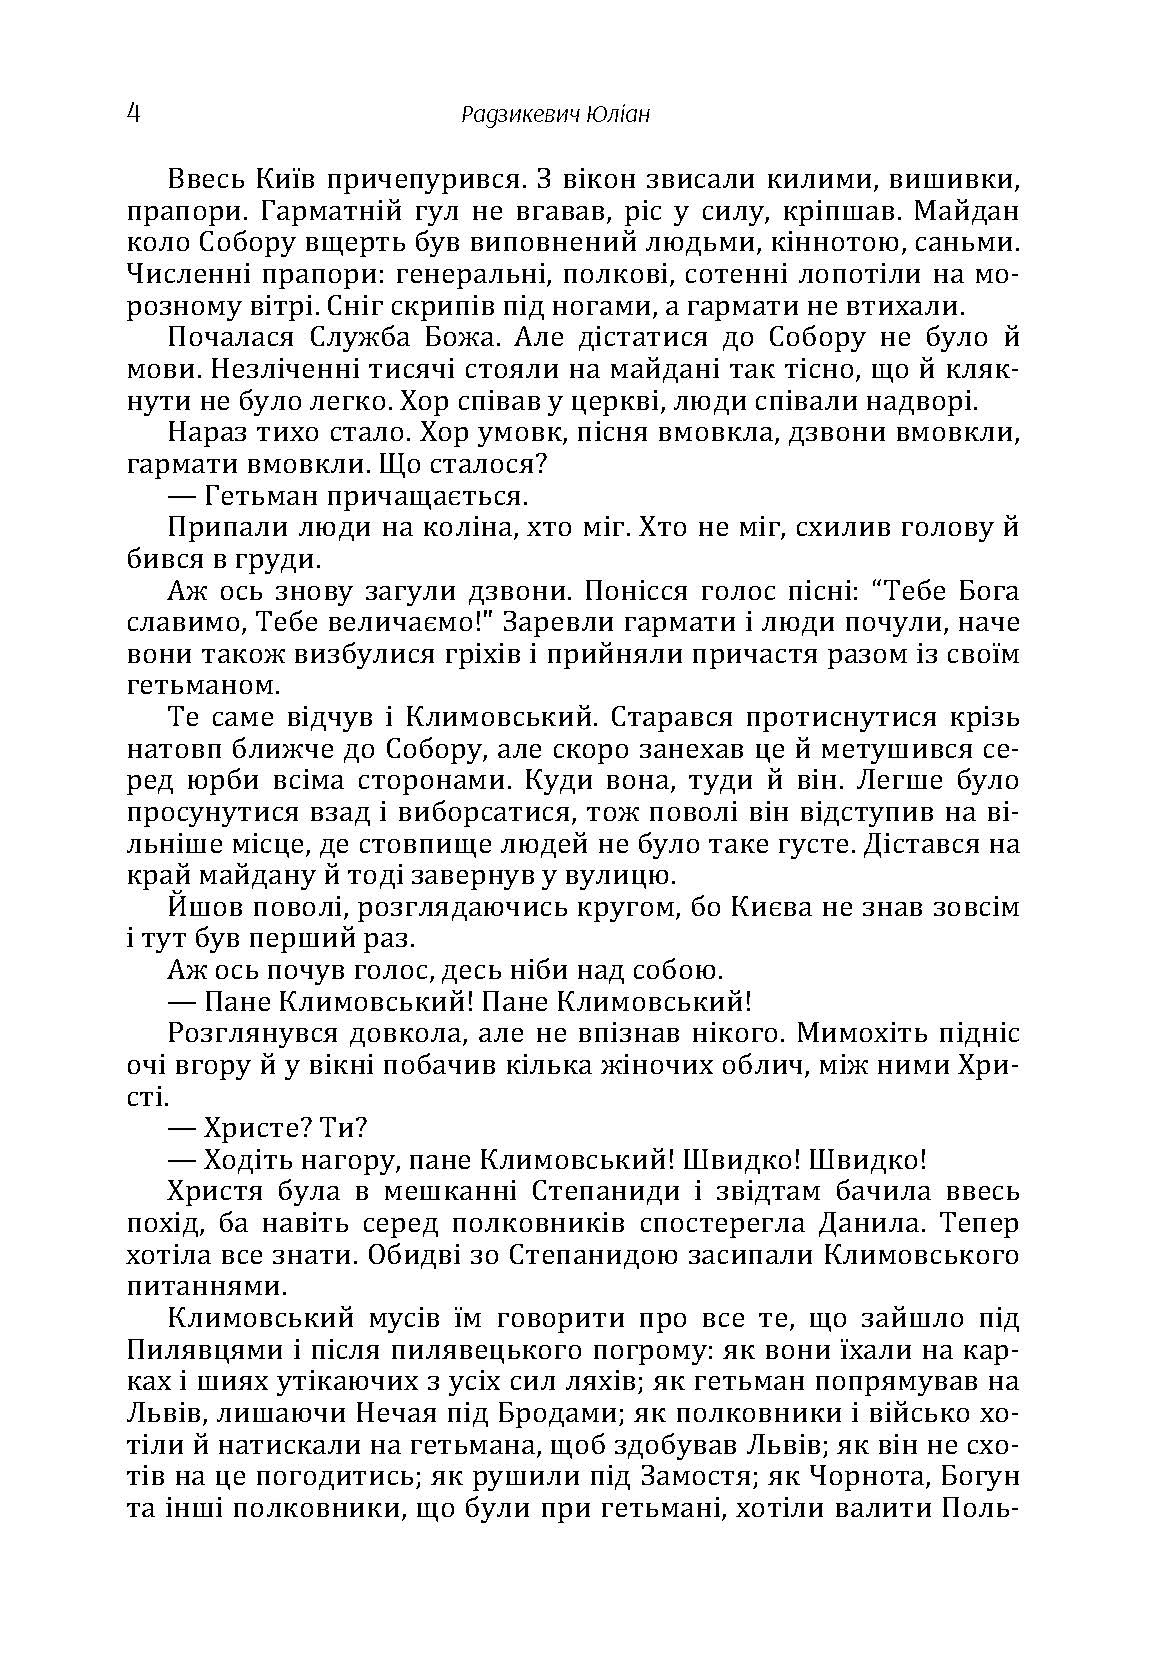 Полковник Данило Нечай. 2 том. Автор — Радзикевич Юліан. 